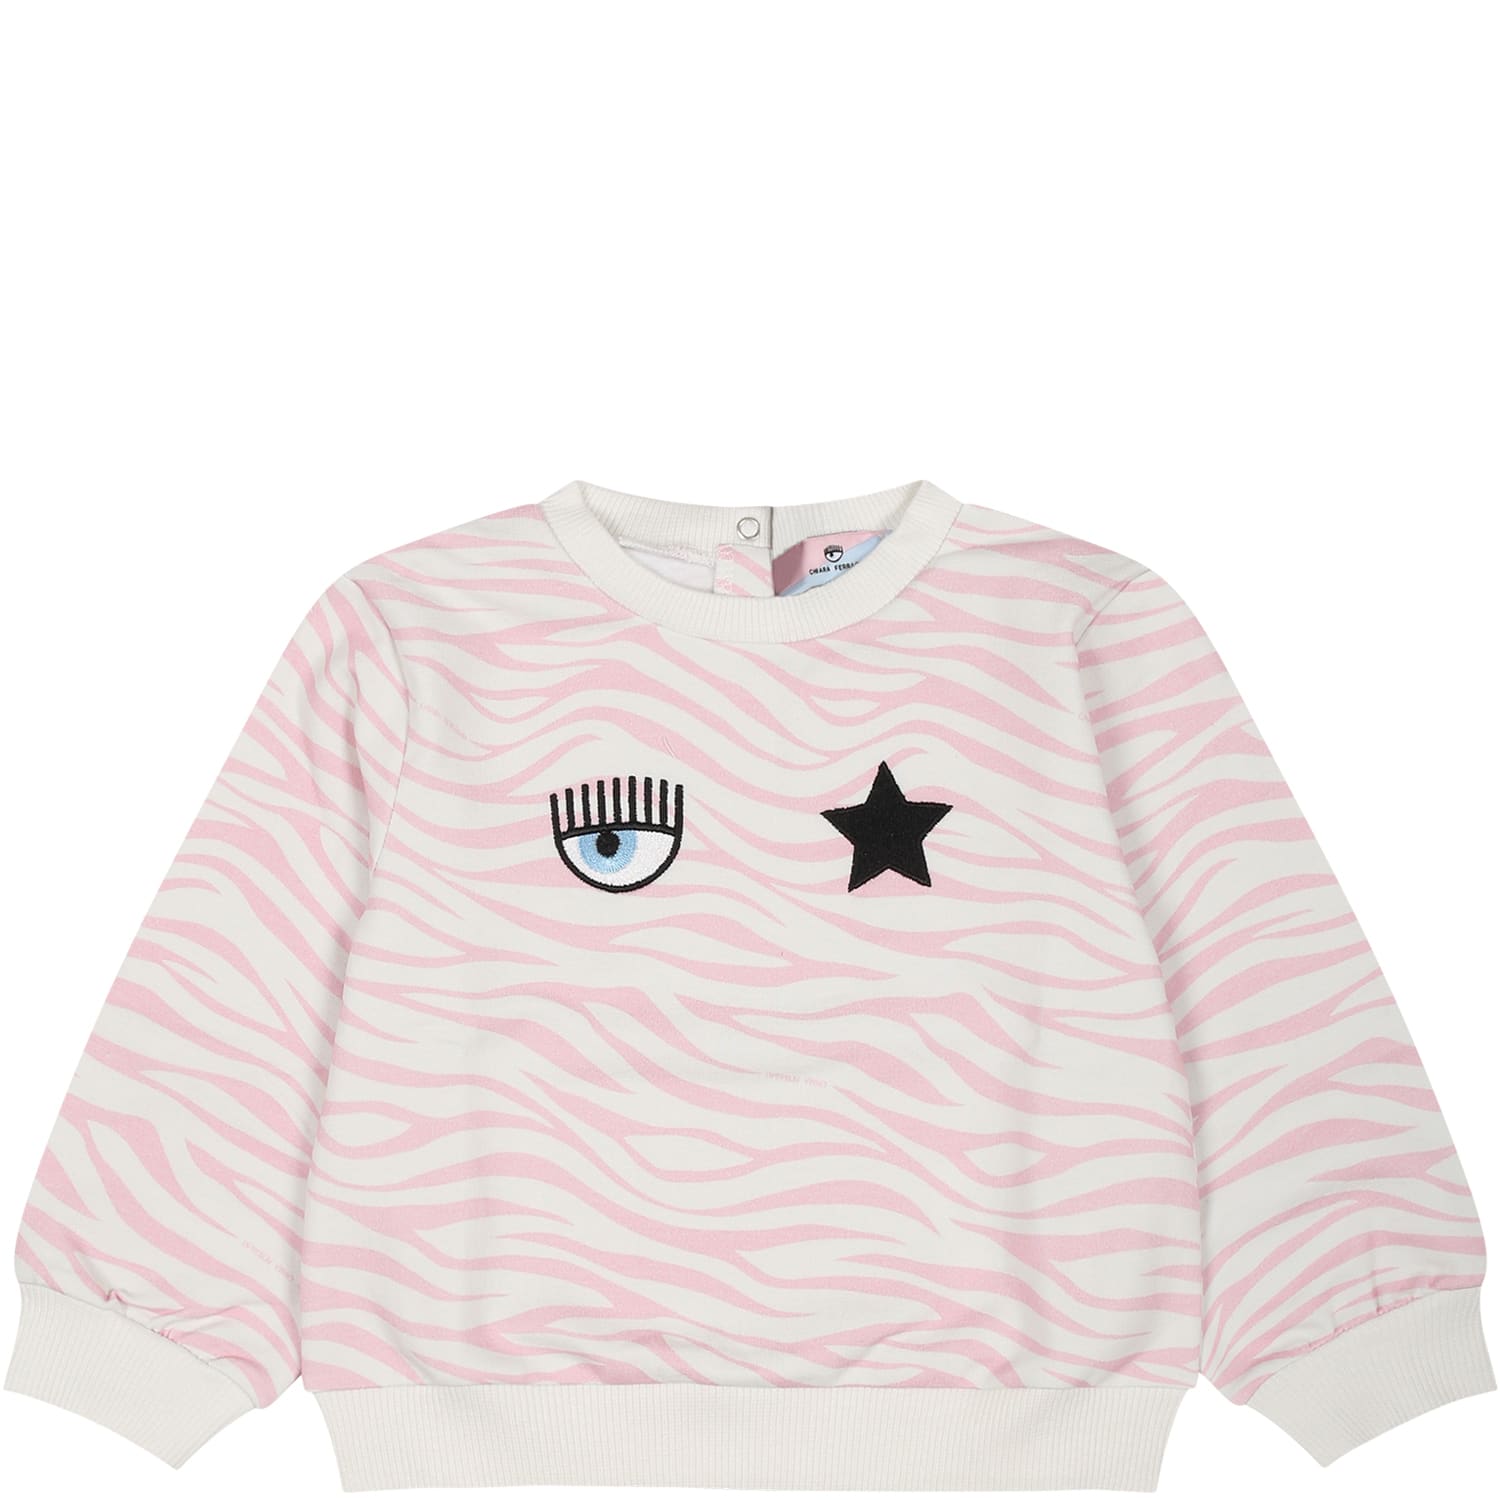 Chiara Ferragni Multicolor Sweatshirt For Baby Girl With Eyestar